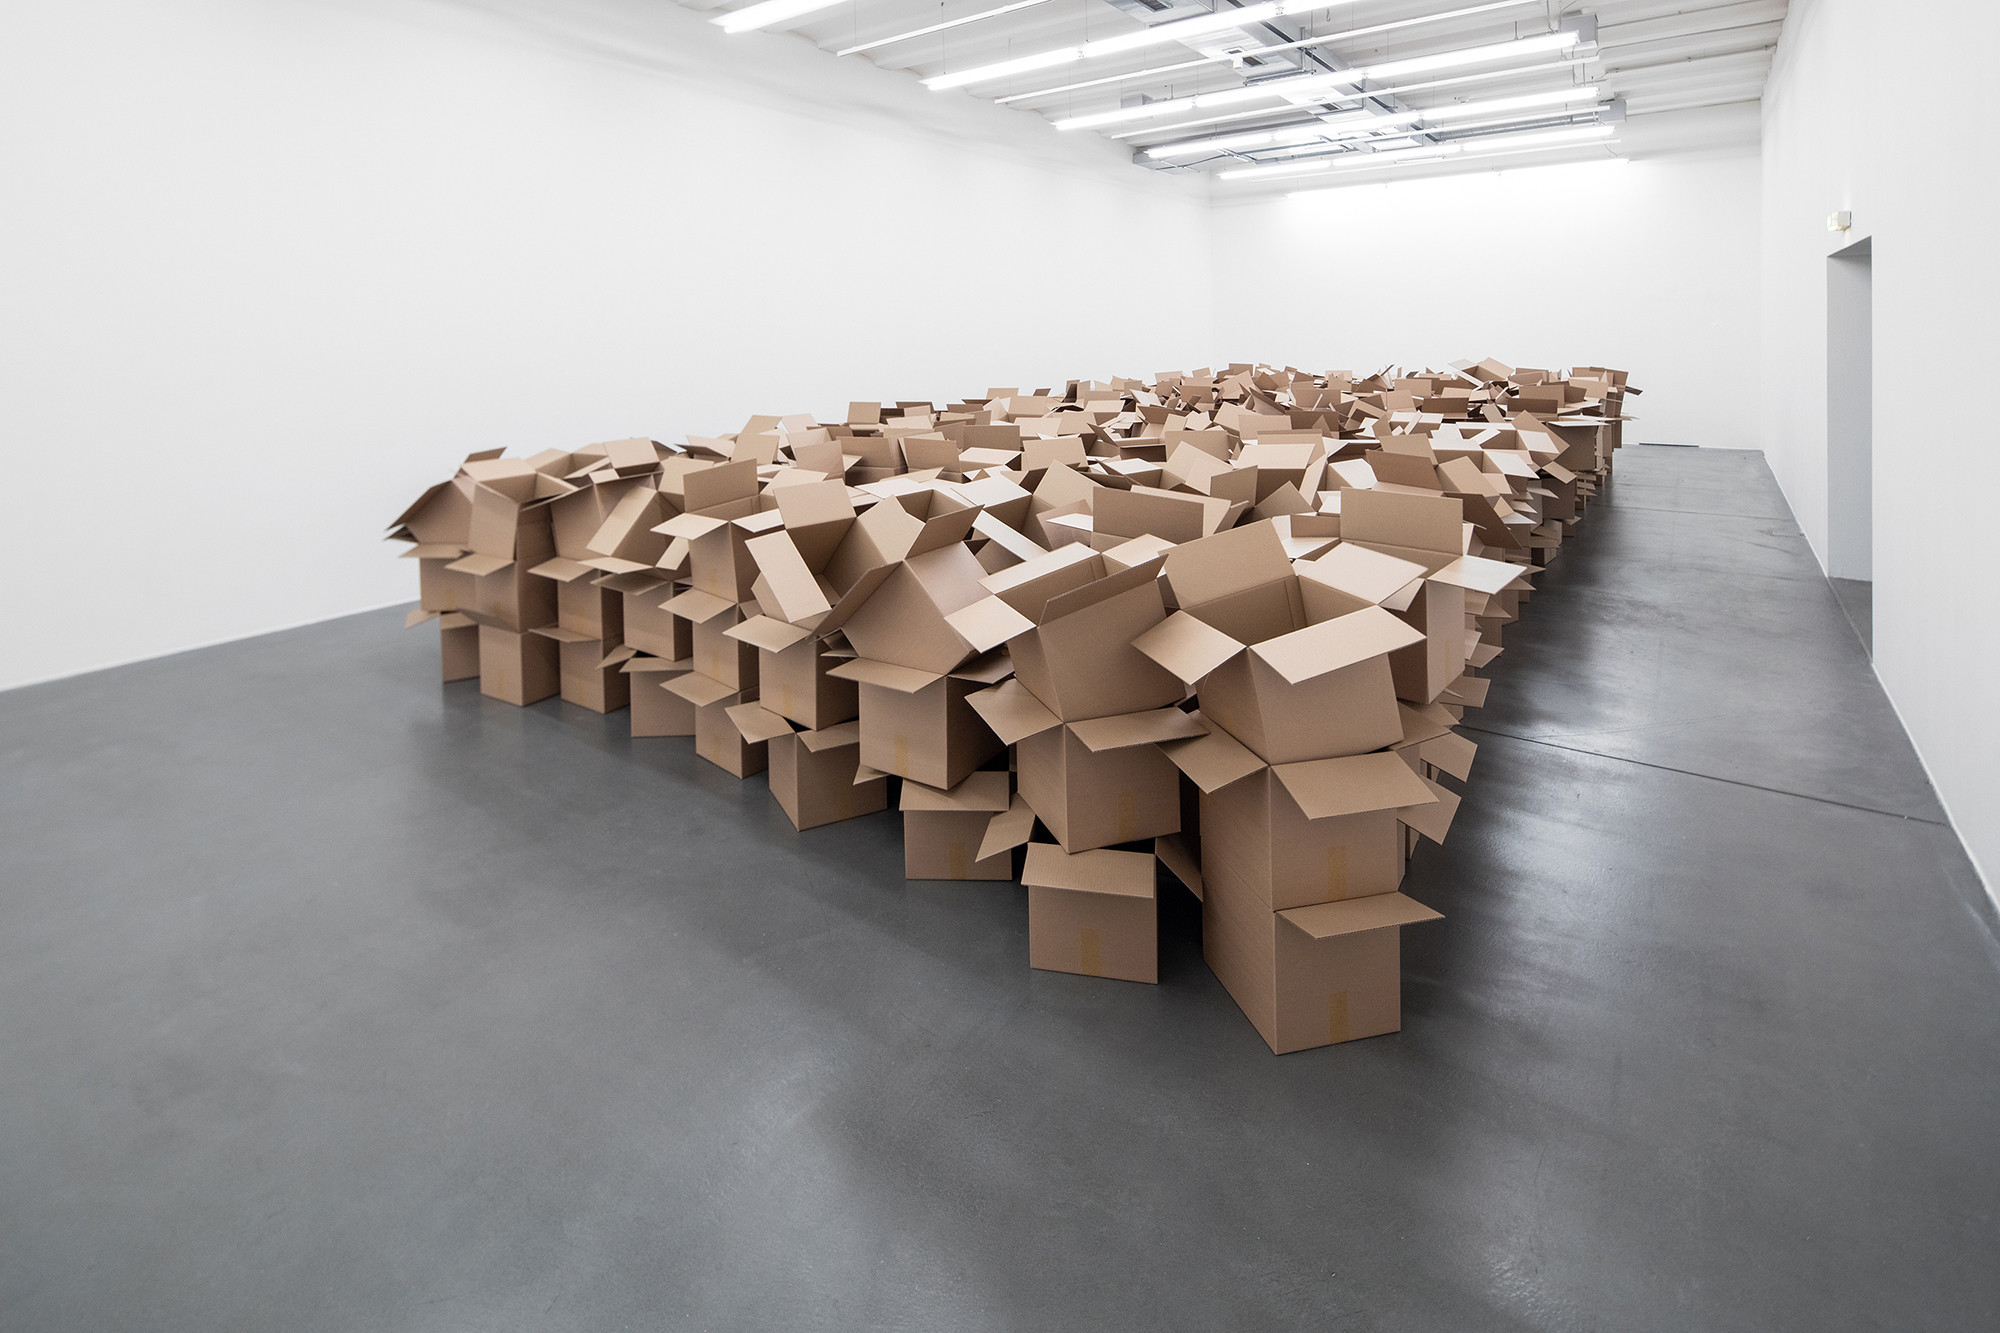 Zimoun: 104 prepared dc-motors, 825 cardboard boxes 35 x 32.5 x 32.5 cm, Installation view Museum Haus Konstruktiv, 2021, © Foto: Zimoun